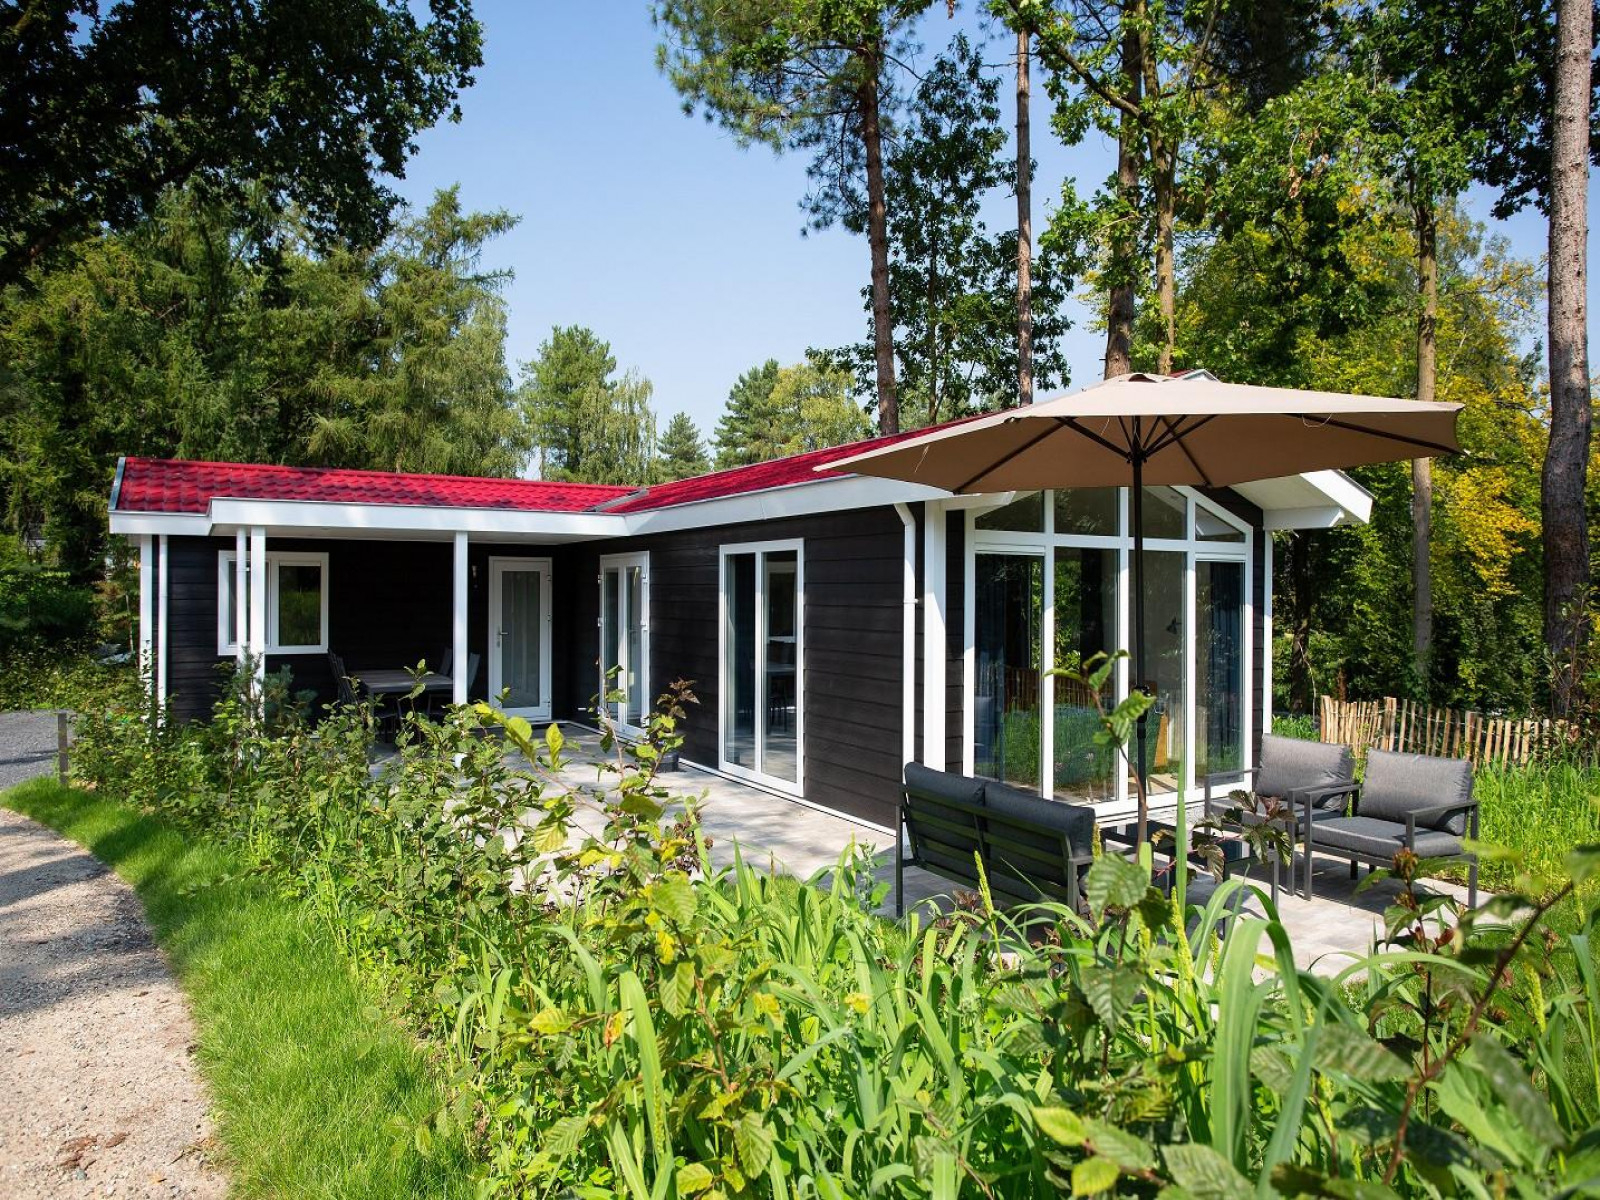 Luxe zespersoons cottage met overdekte veranda - Nederland - Europa - Rhenen